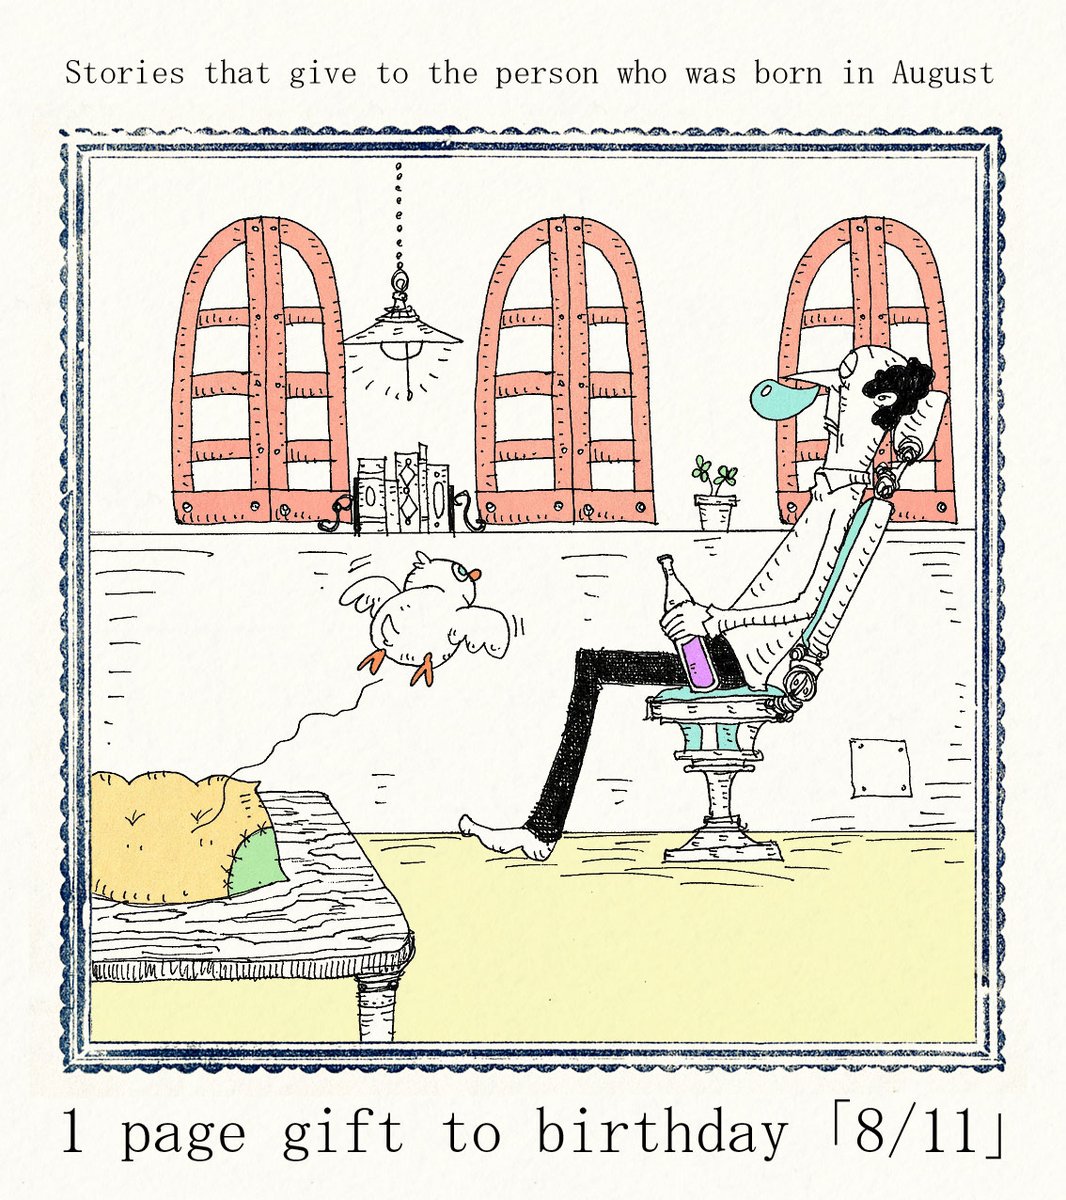 大志 8 11生まれの方 お誕生日おめでとうございます 8月11日生まれの方に届くと嬉しいです いつもより素敵な一日となりますように 誕生日 Happybirthday 8月11日 ボールペン画 イラスト